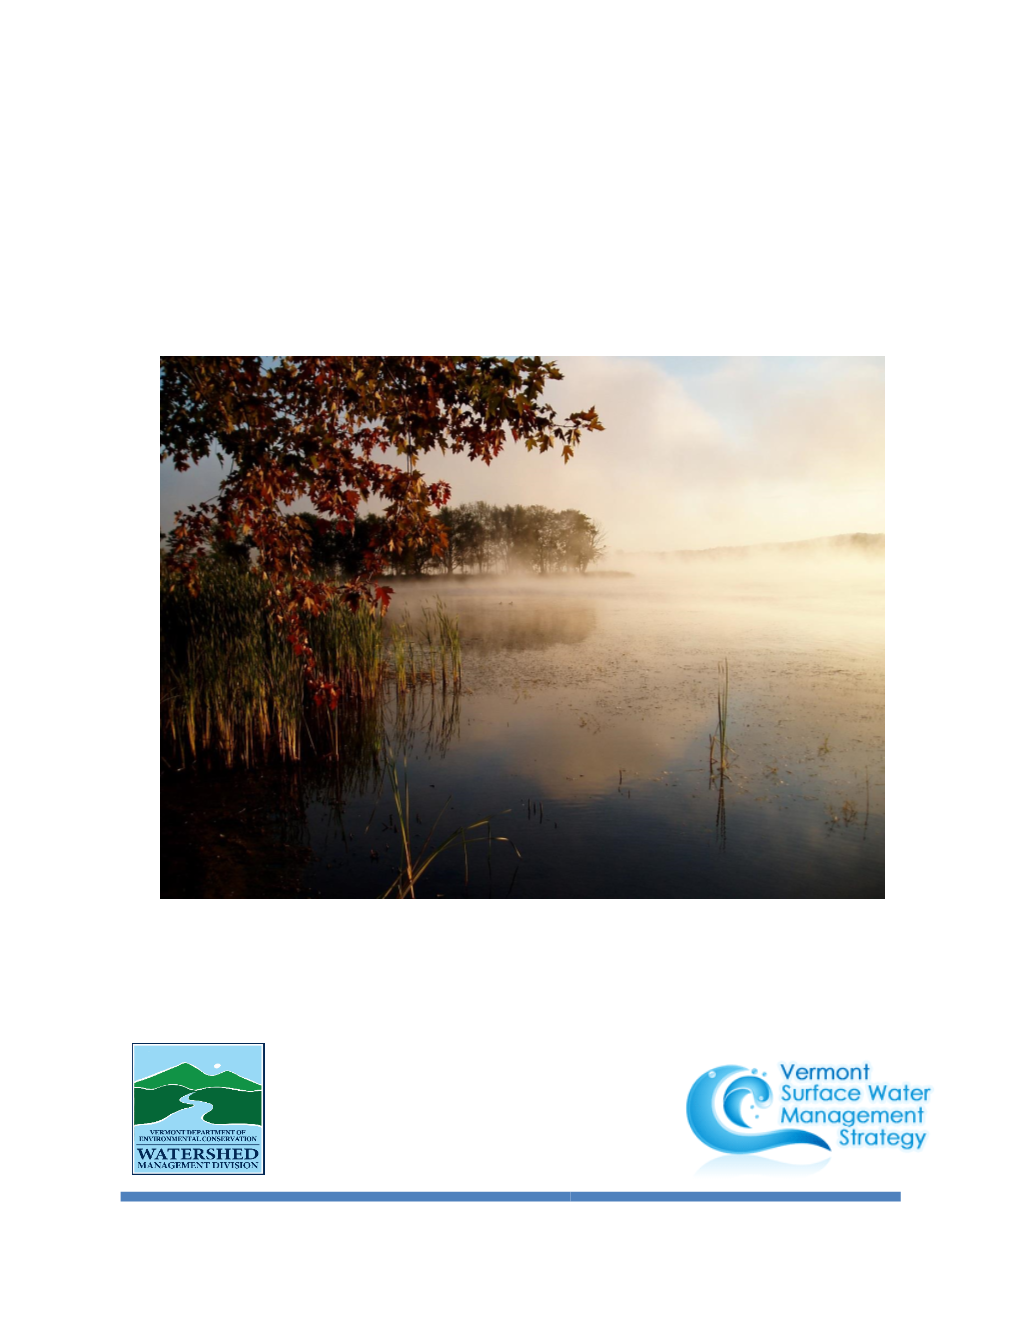 Basin 17 Lake Memphremagog, Tomifobia and Coaticook 5/11/17 DRAFT TACTICAL BASIN PLAN